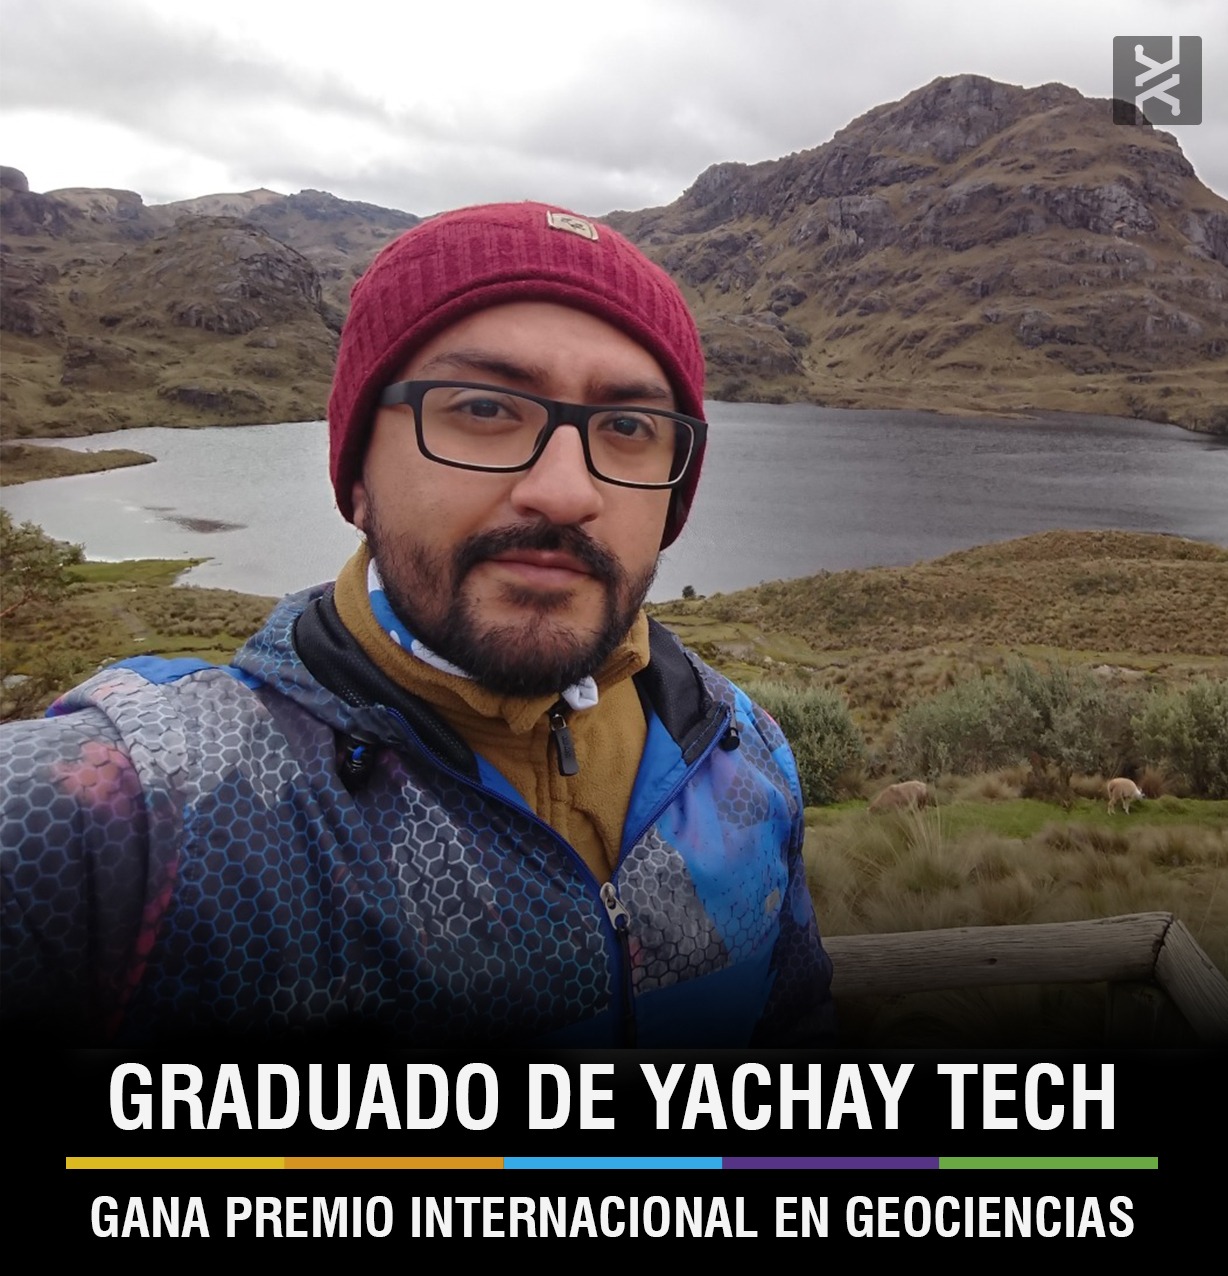 GRADUADO DE YACHAY TECH GANA PREMIO INTERNACIONAL EN GEOCIENCIAS